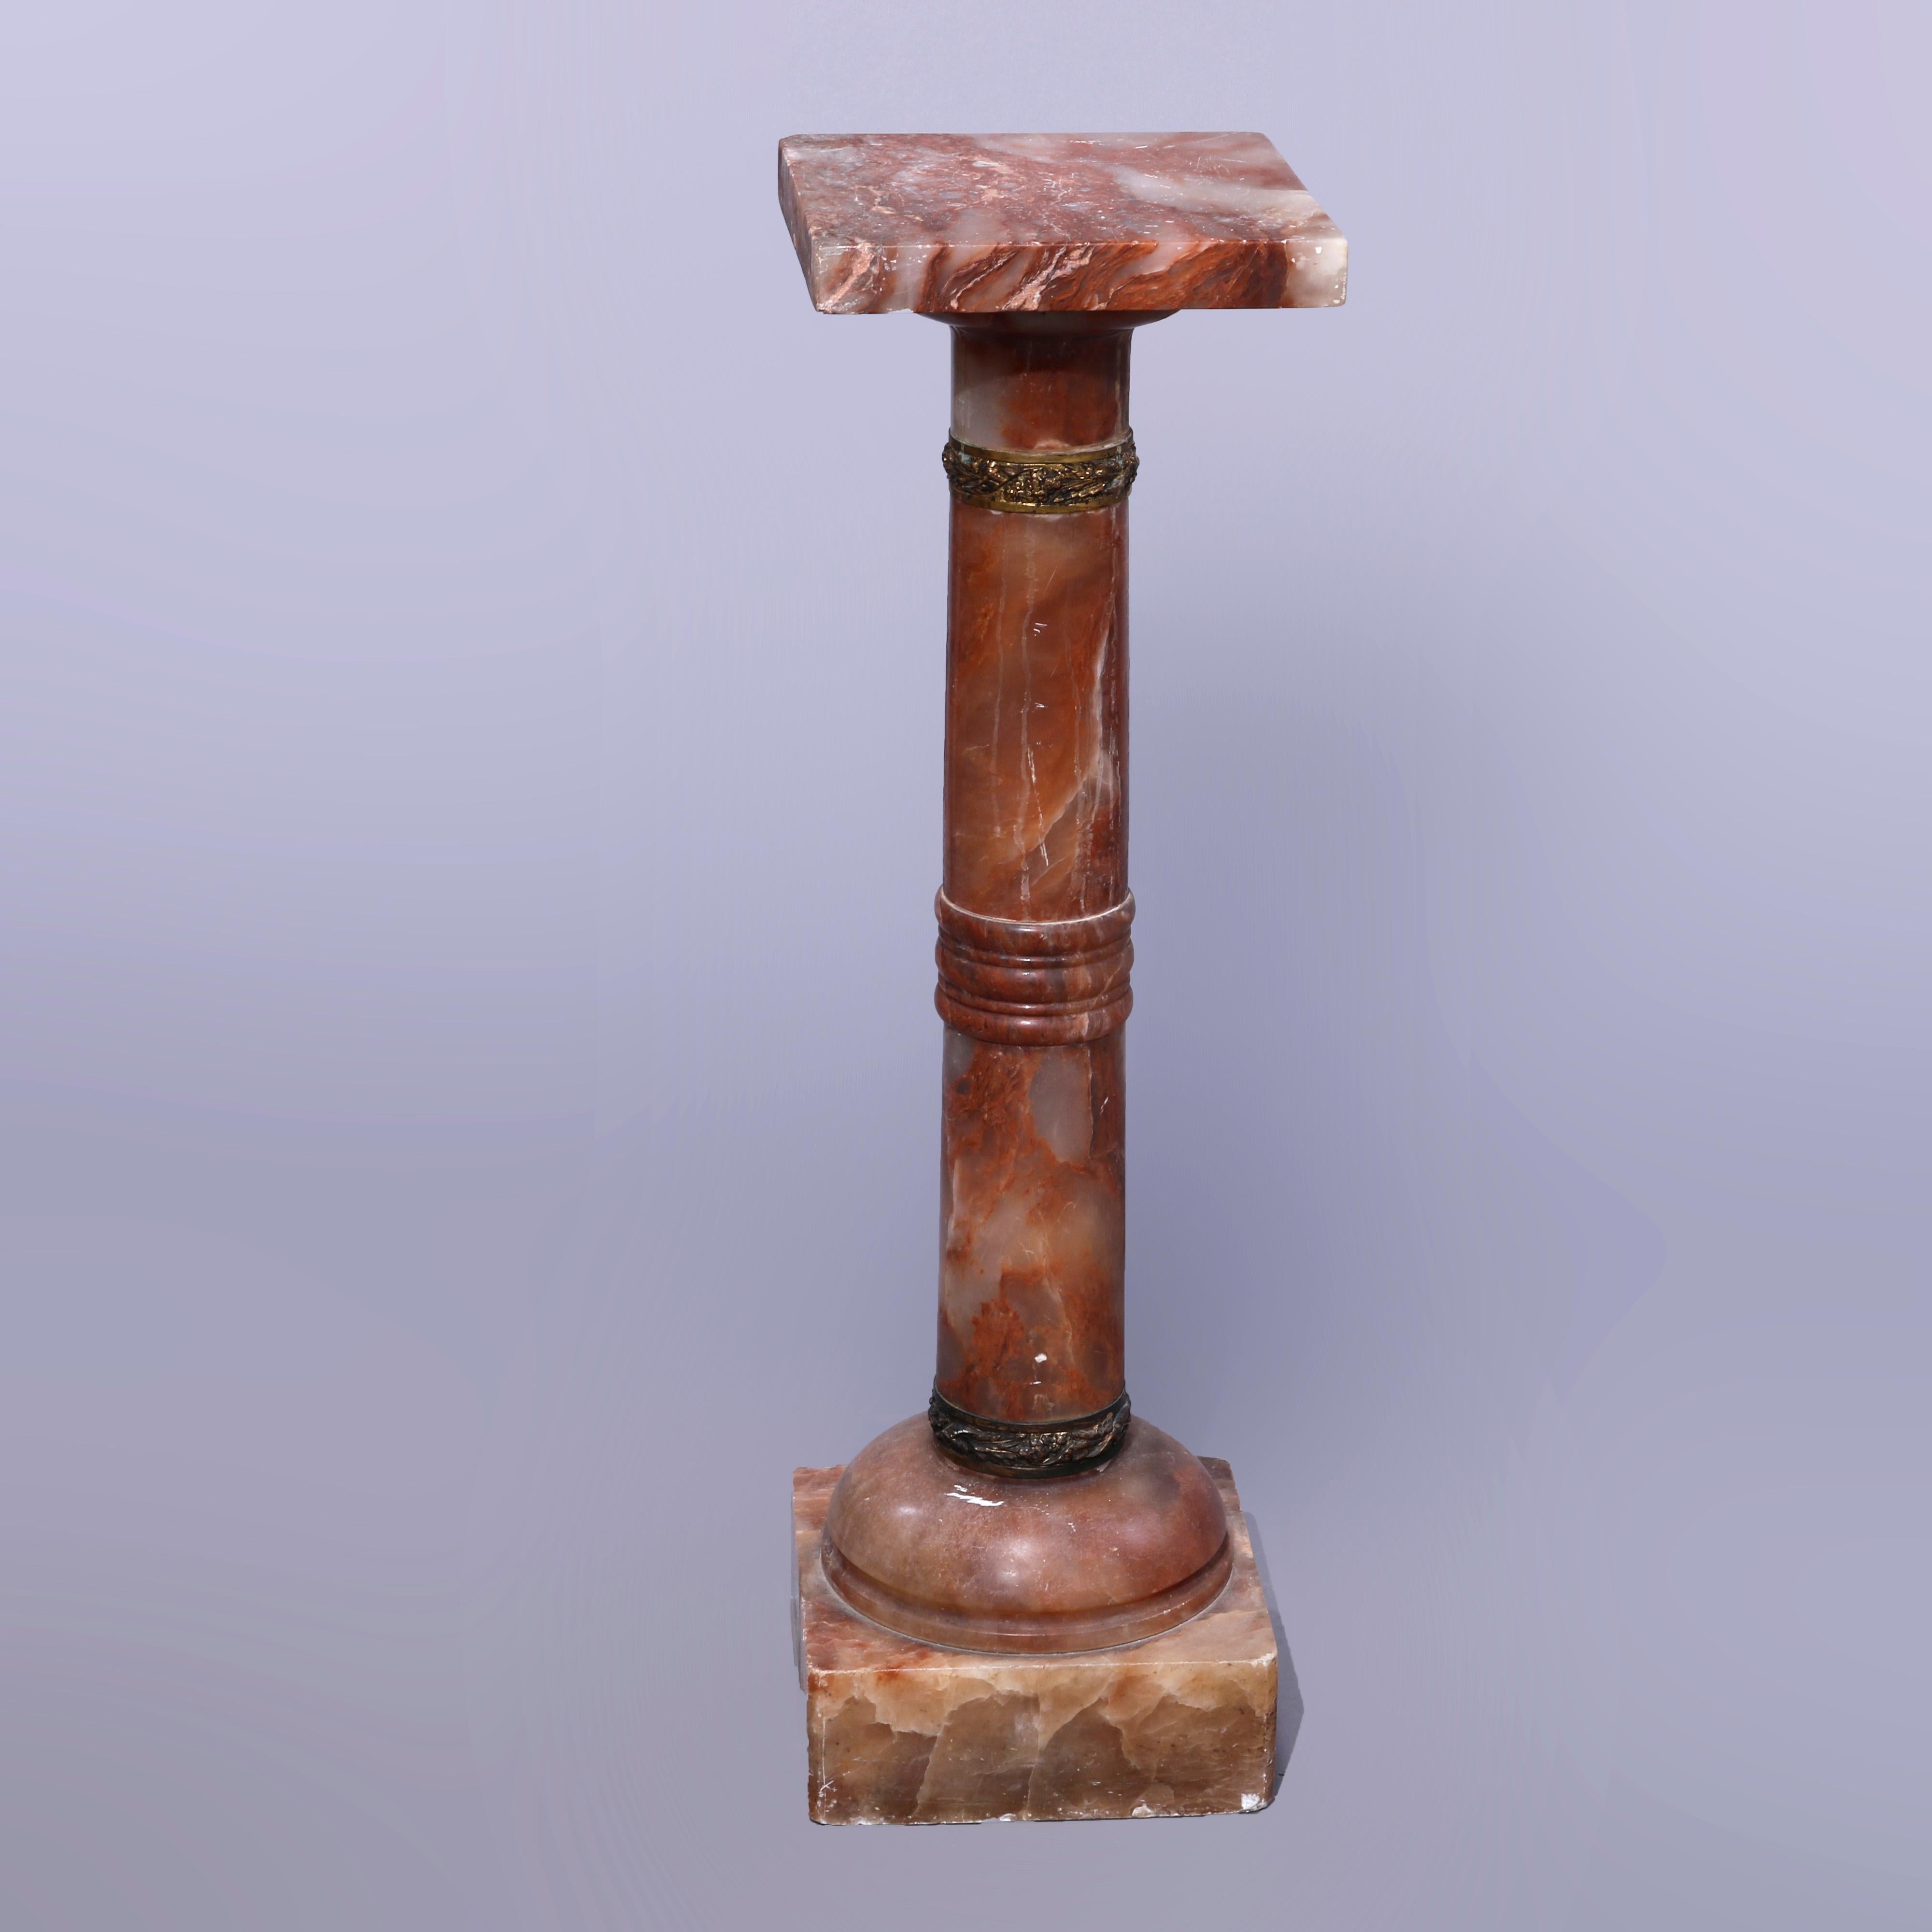 Eine antike klassizistische Skulptur Sockel bietet rouge Onyx-Konstruktion mit quadratischen Display über gedreht und foliate Bronze gegossen gebändert dorischen Säule, auf quadratischen Block Basis erhöht, c1890

Maße - 38''H x 11''W x